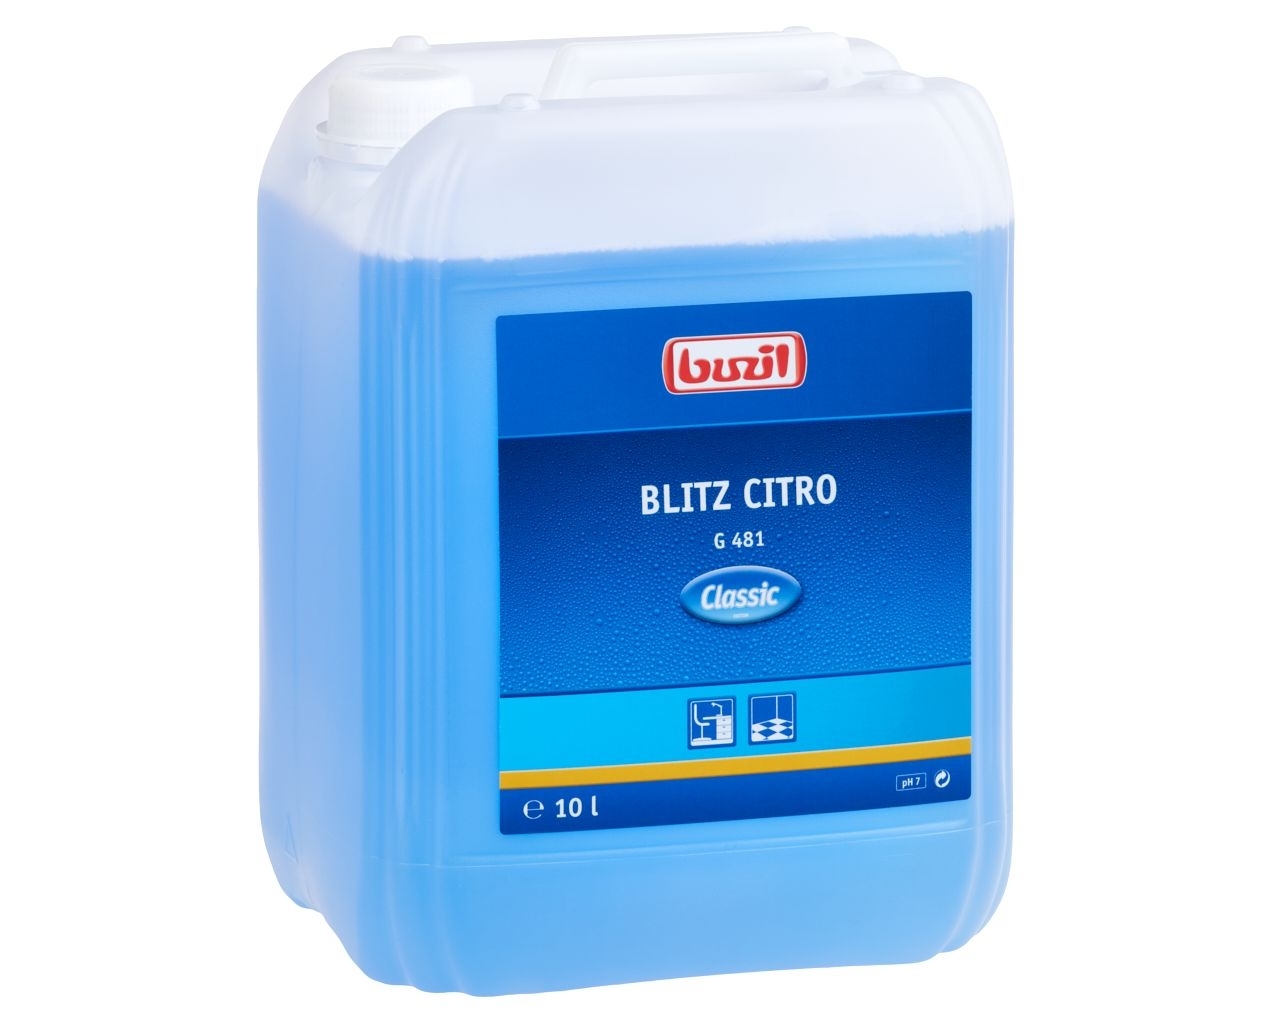 G481 Blitz Citro - Środek do codziennego mycia podłóg, kanister 10 l